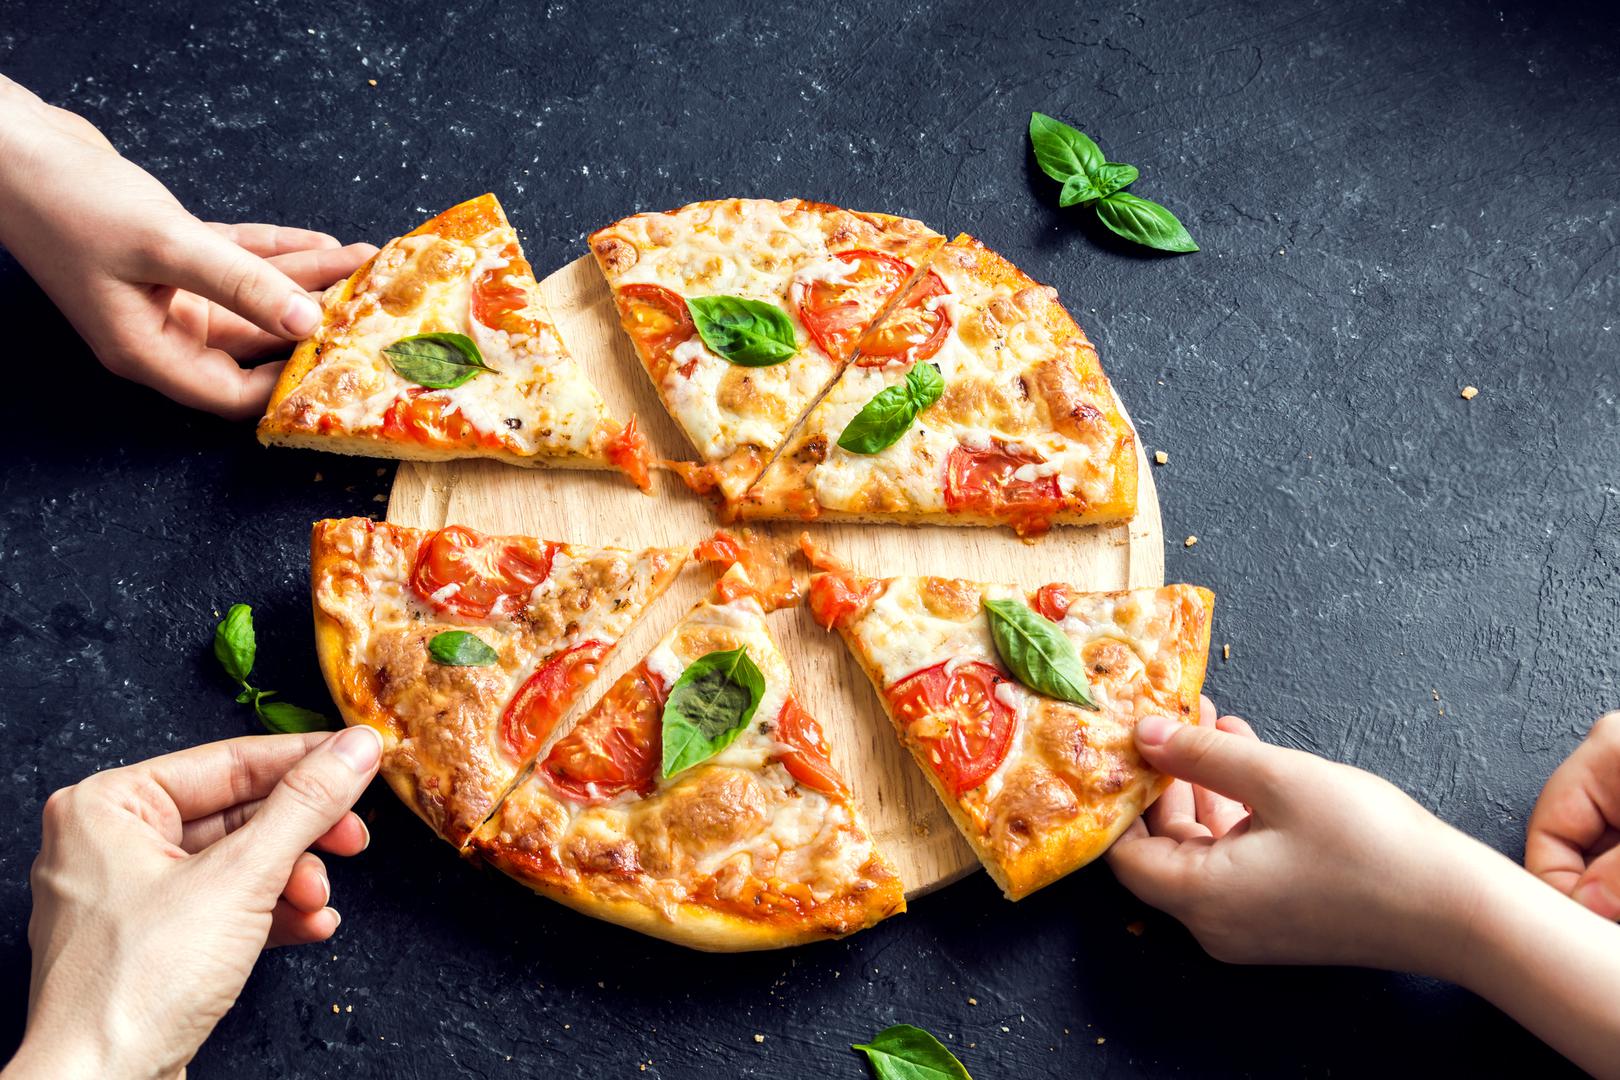 Dan Bransfield u svojoj knjizi "Pizzapedia" pojašnjava kako je Margherita zapravo jedna od tri vrste originalne napuljske pizze. U originalu se priprema od tijesta s dodatkom rajčice, narezane mozzarelle, svježeg bosiljka i ekstra djevičanskog maslinovog ulja. 